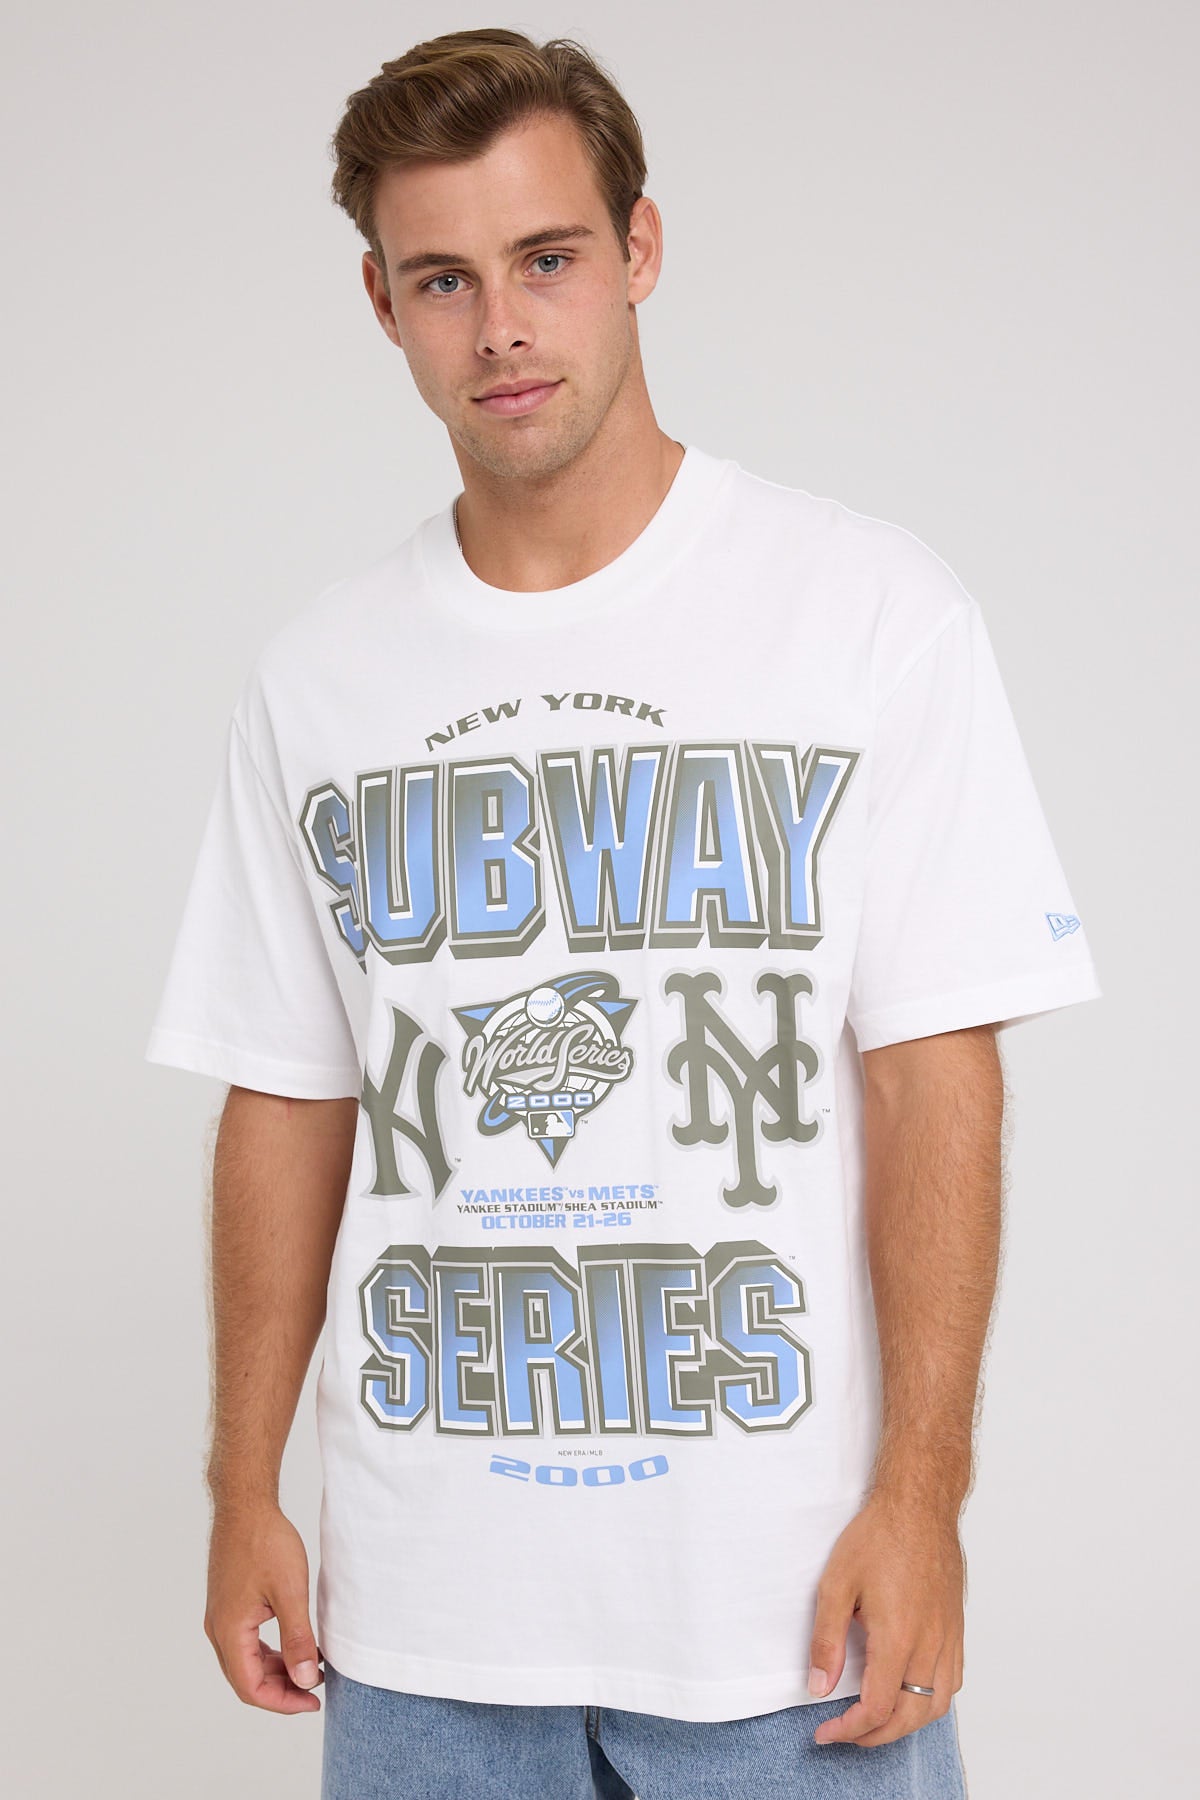 New Era Yankees Subway Series Oversized Tee White